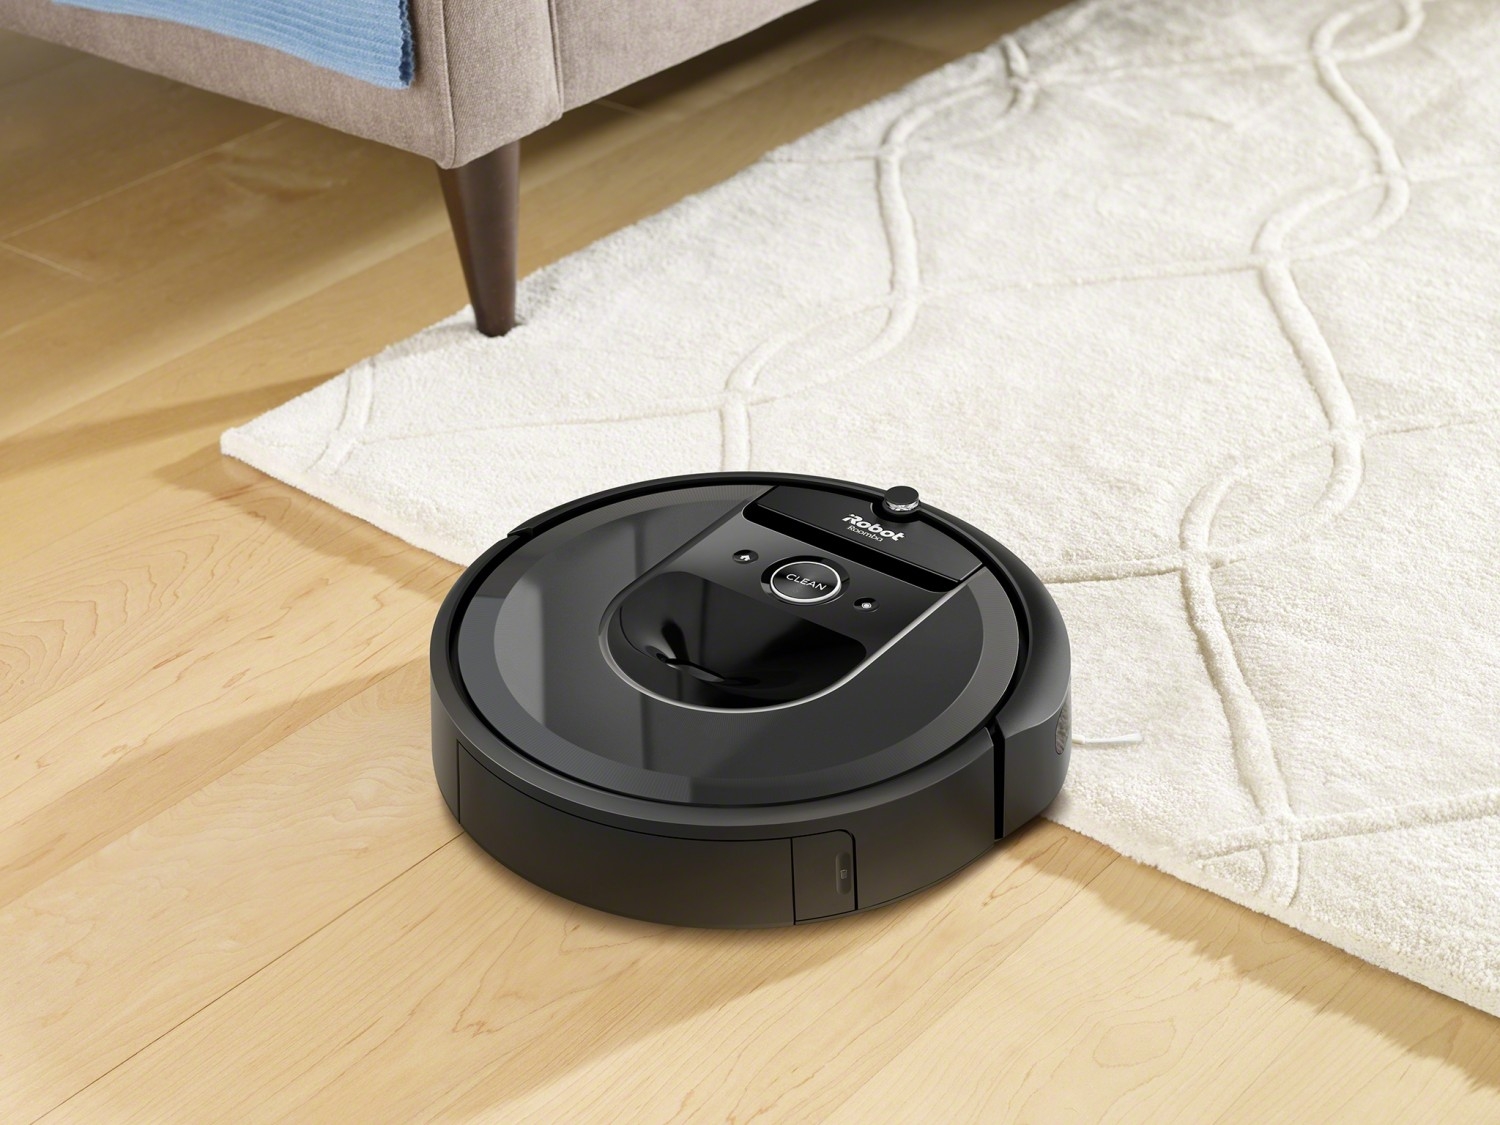 iRobot Roomba i7 robotporszívó bemutatása